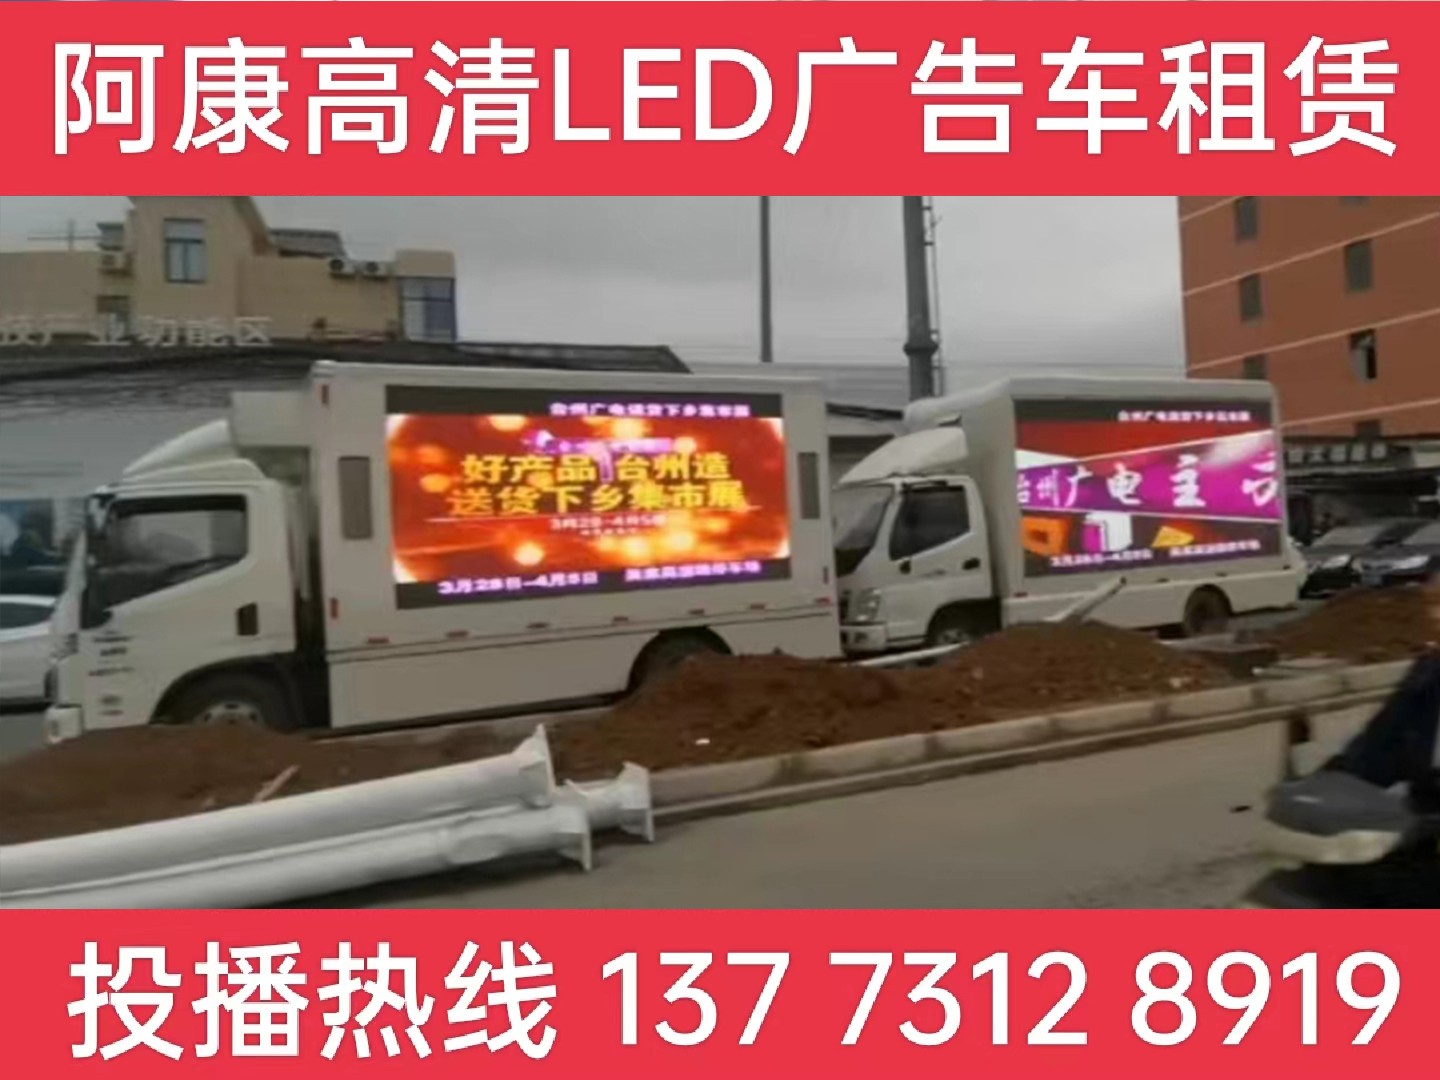 LED宣传车租赁